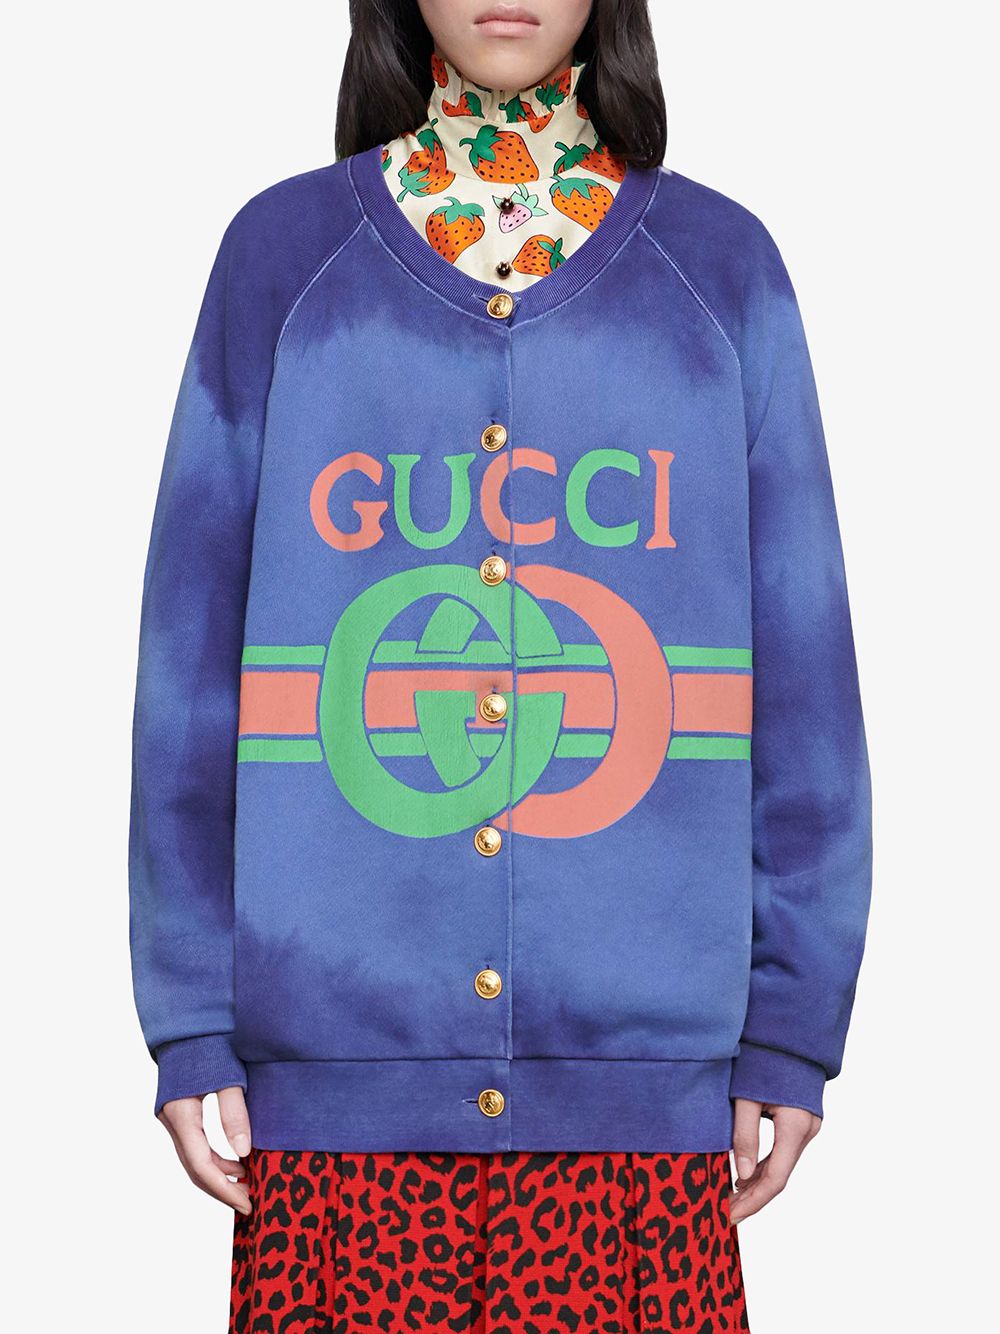 Gucci Cotton Sweatshirt With Gucci Logo - Farfetch